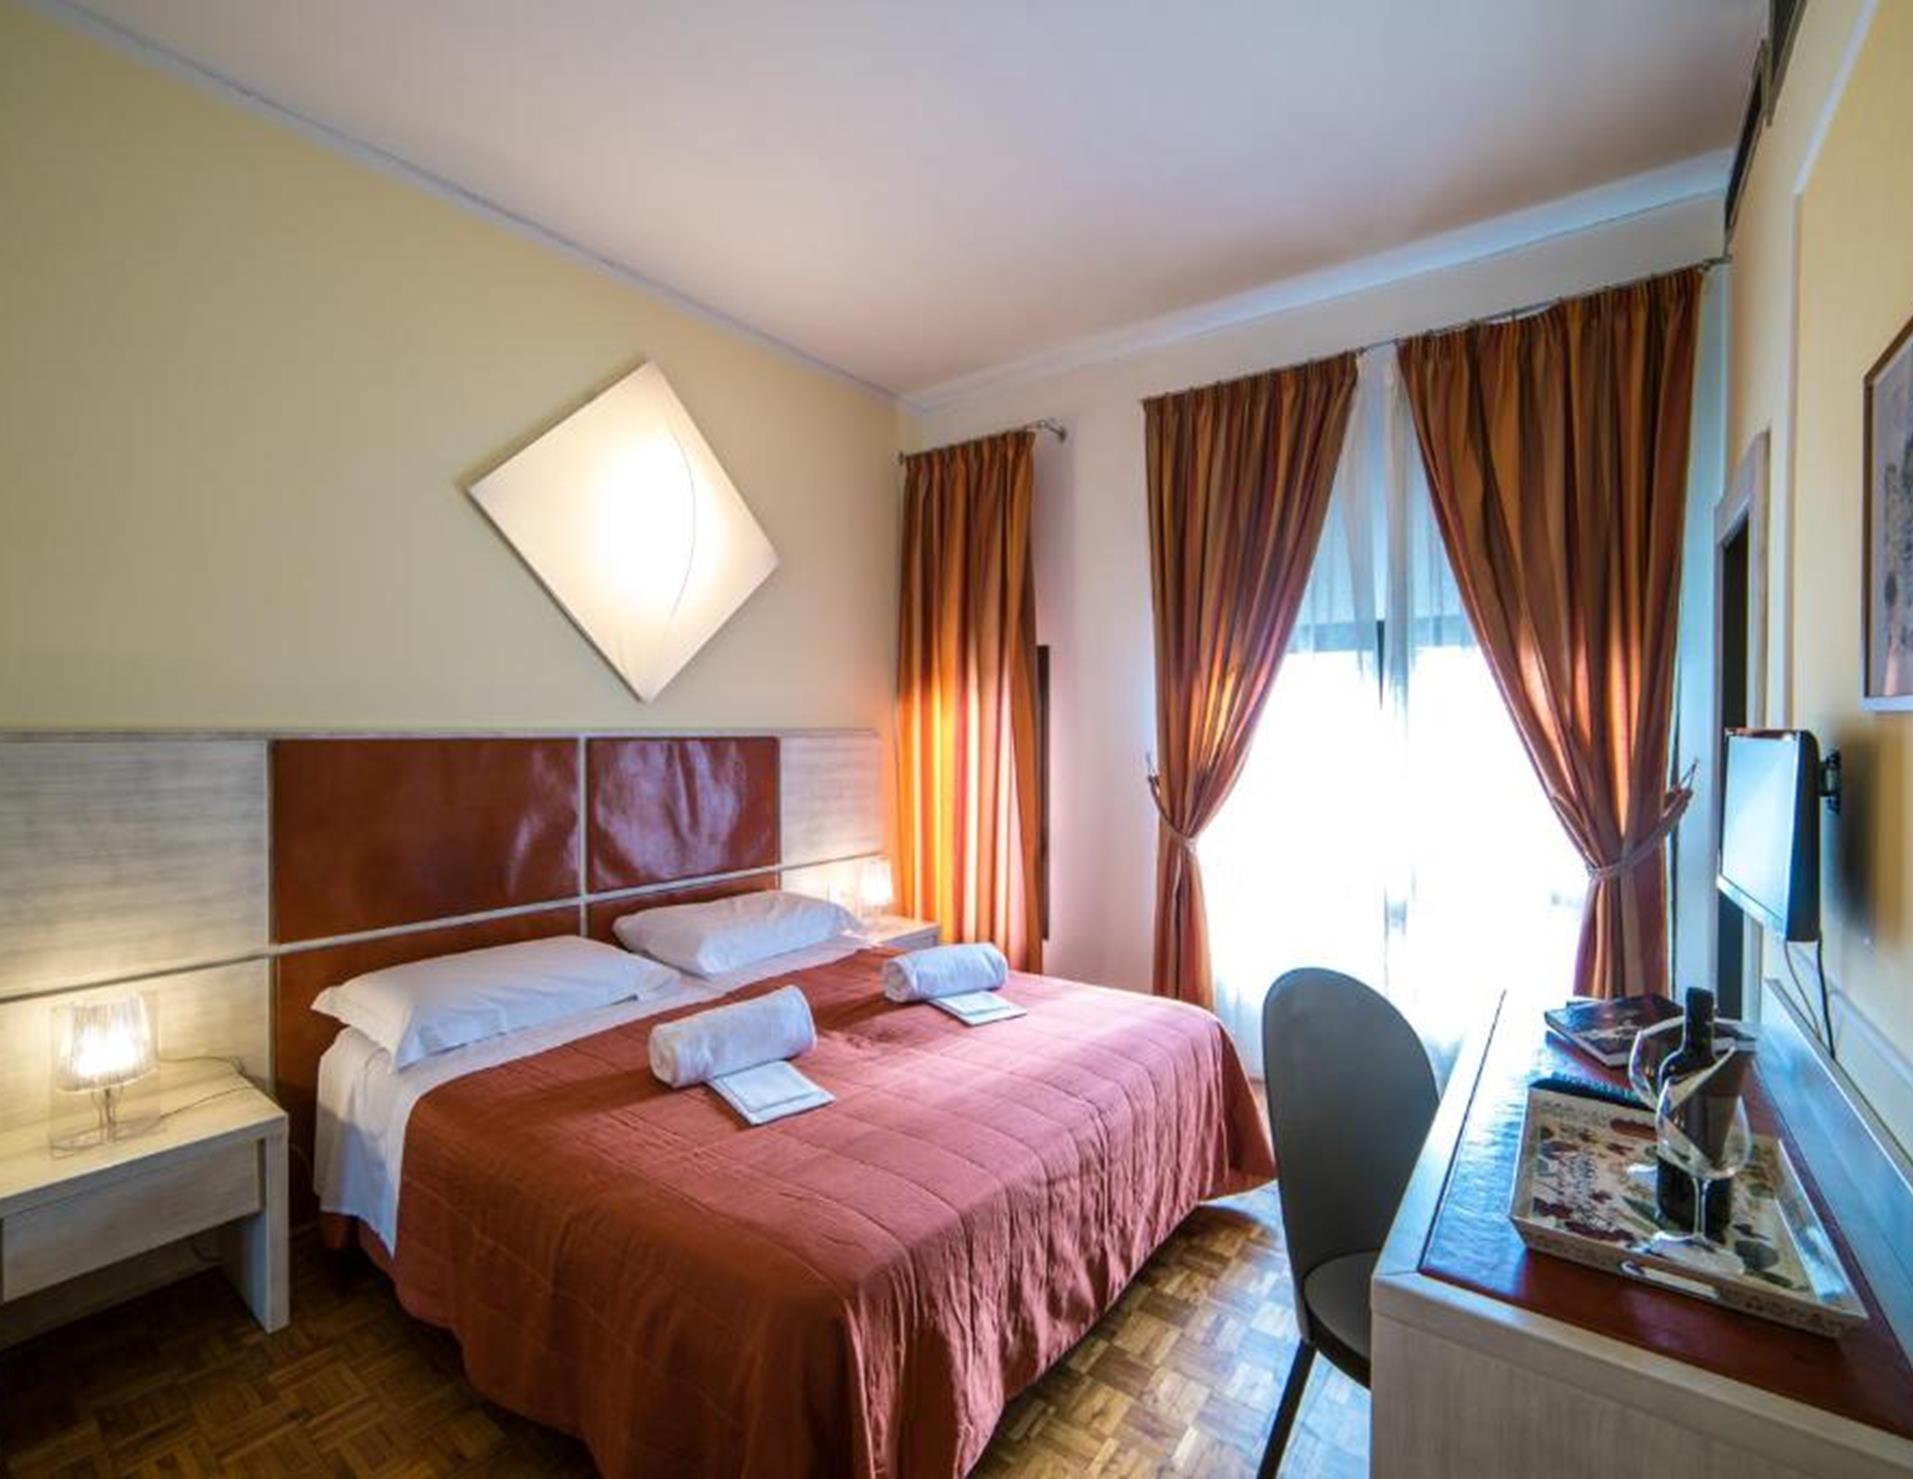 Hotel La Vecchia Cartiera - Room 5